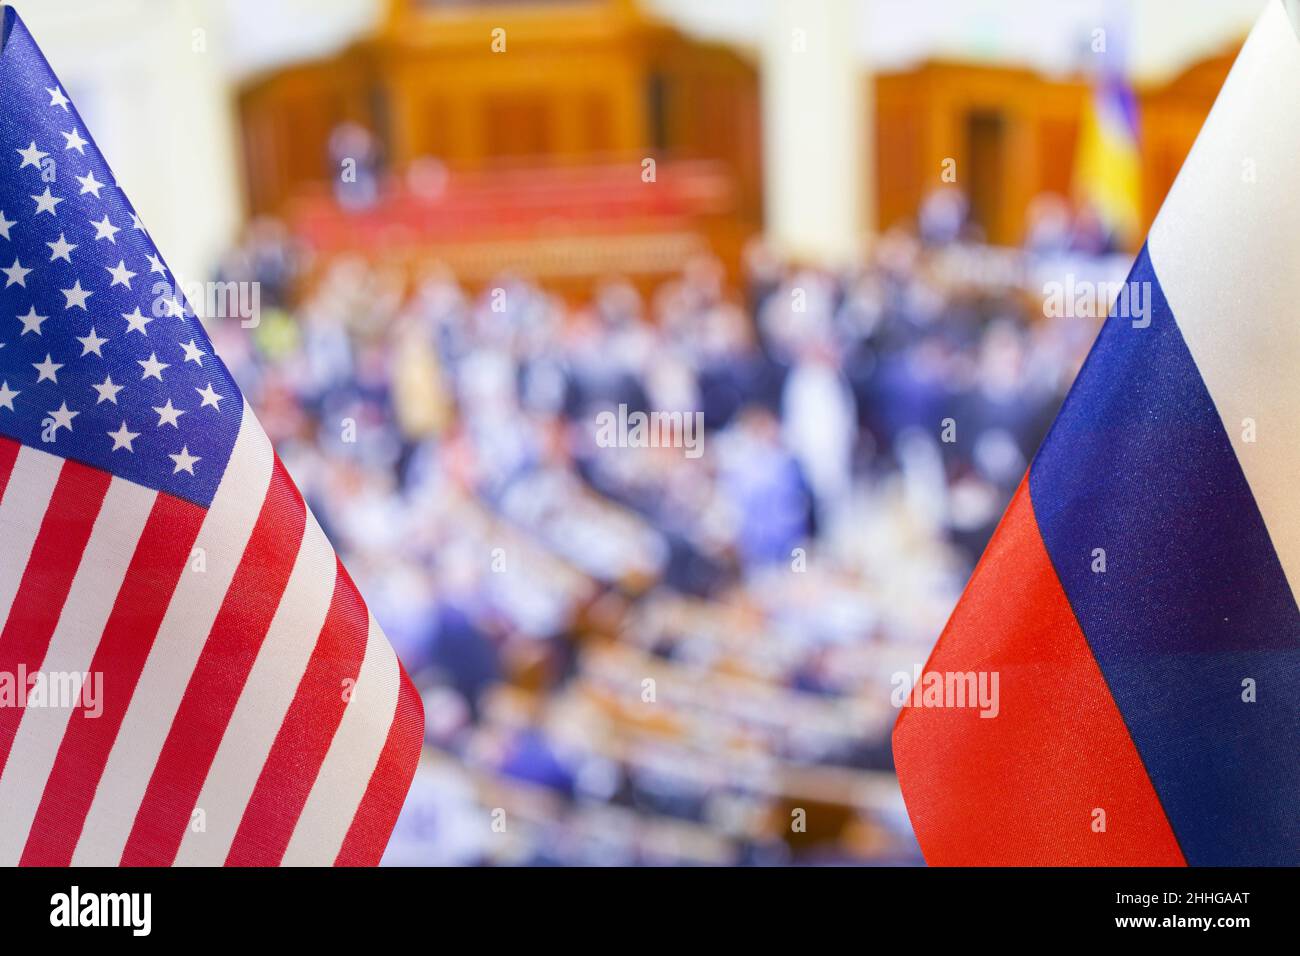 Die US-Flagge und die russische Flagge vor dem Hintergrund vieler Menschen. Flagge der USA, Flagge Russlands. Die Vereinigten Staaten von Amerika und die Russische Föderation Stockfoto